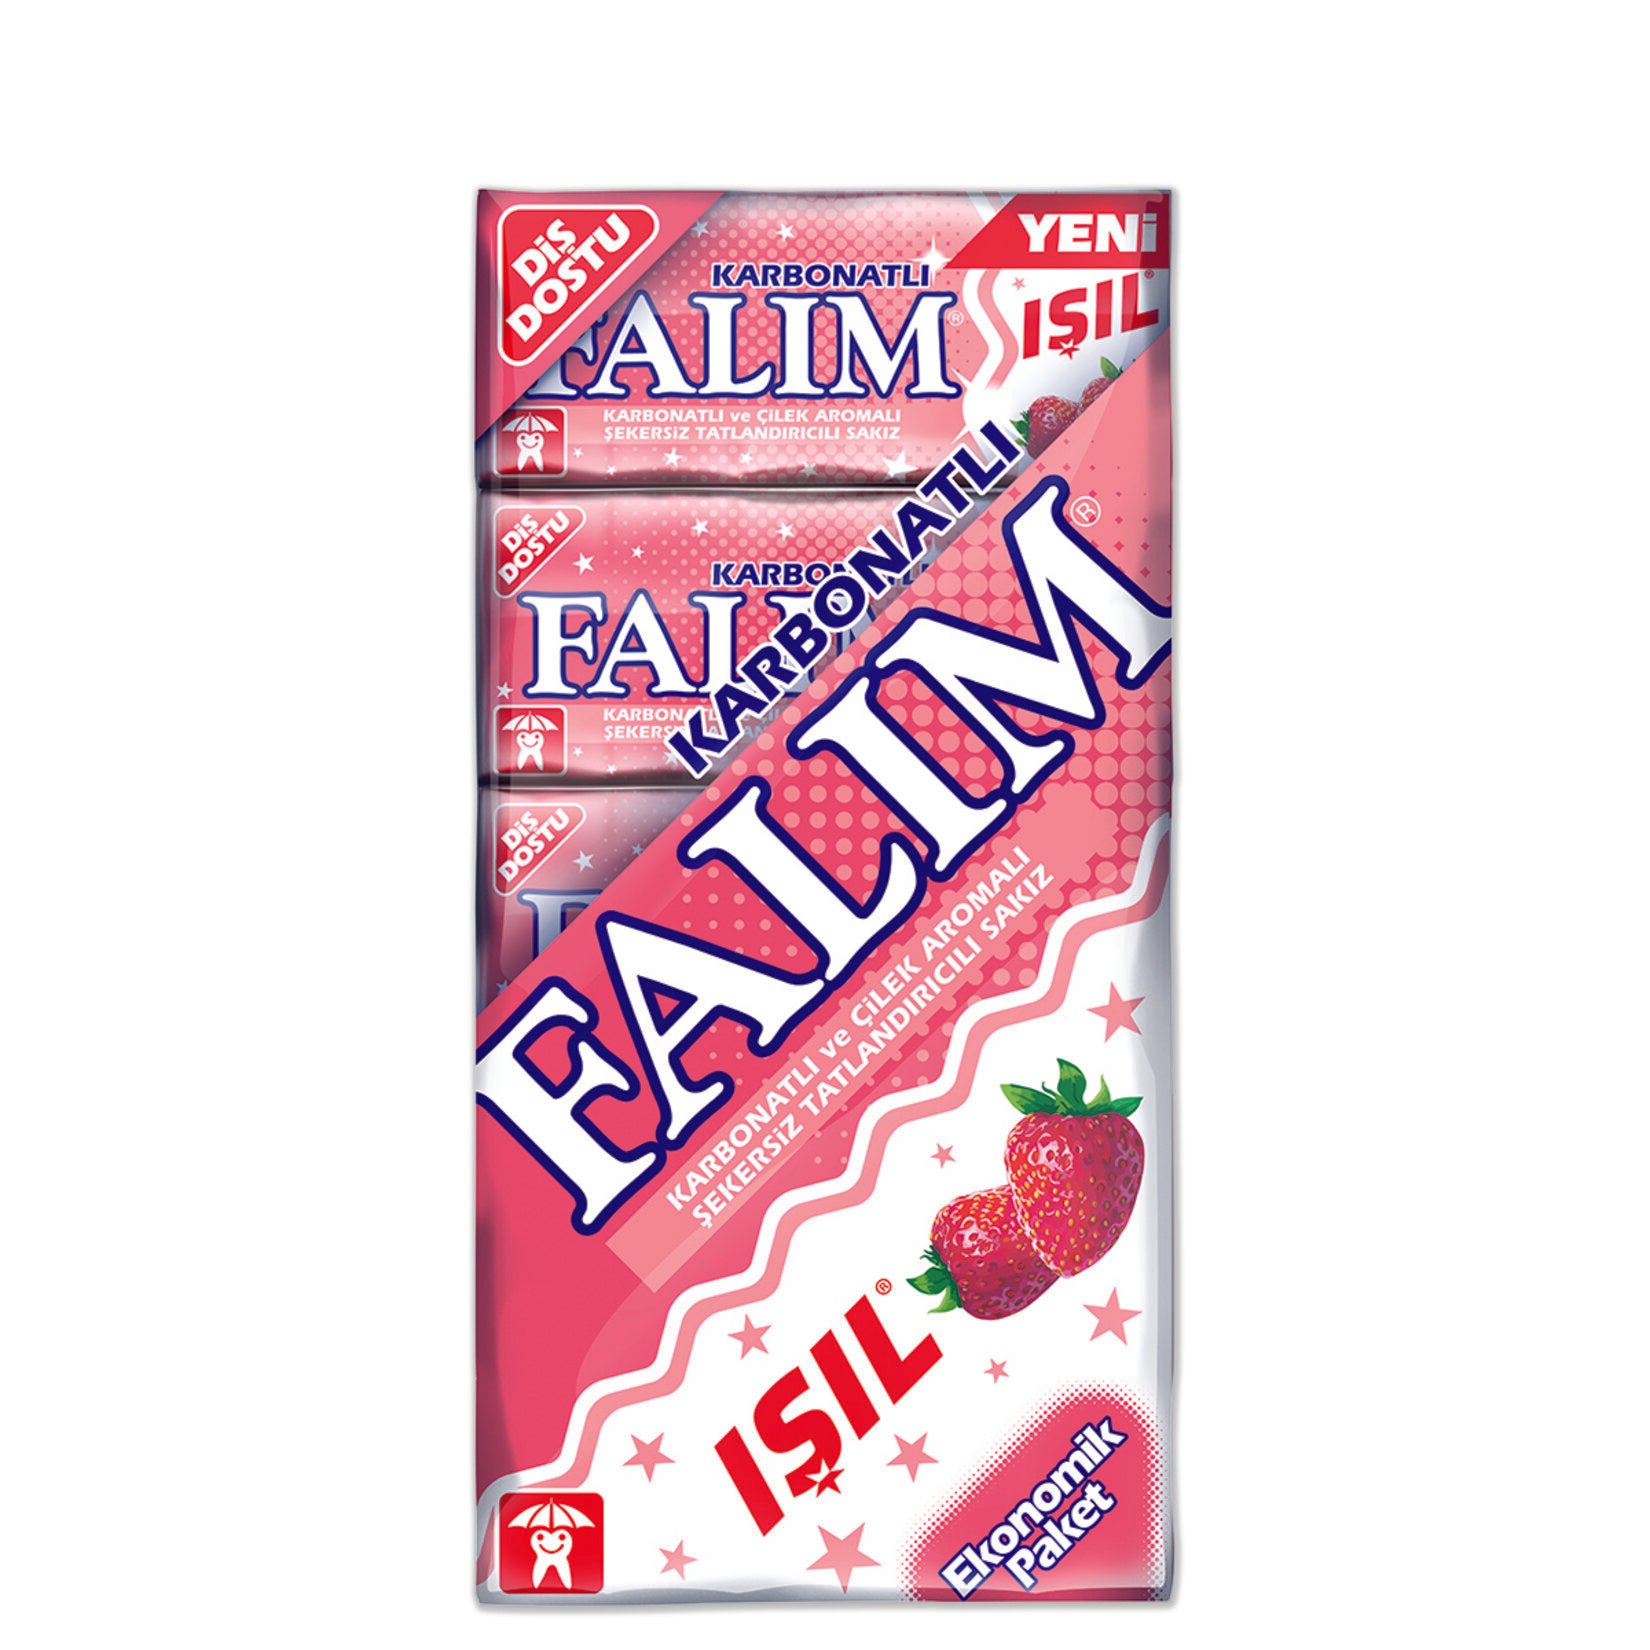 Falim Gum - Mastic Flavored Sugar - Free Gum-Online Food and